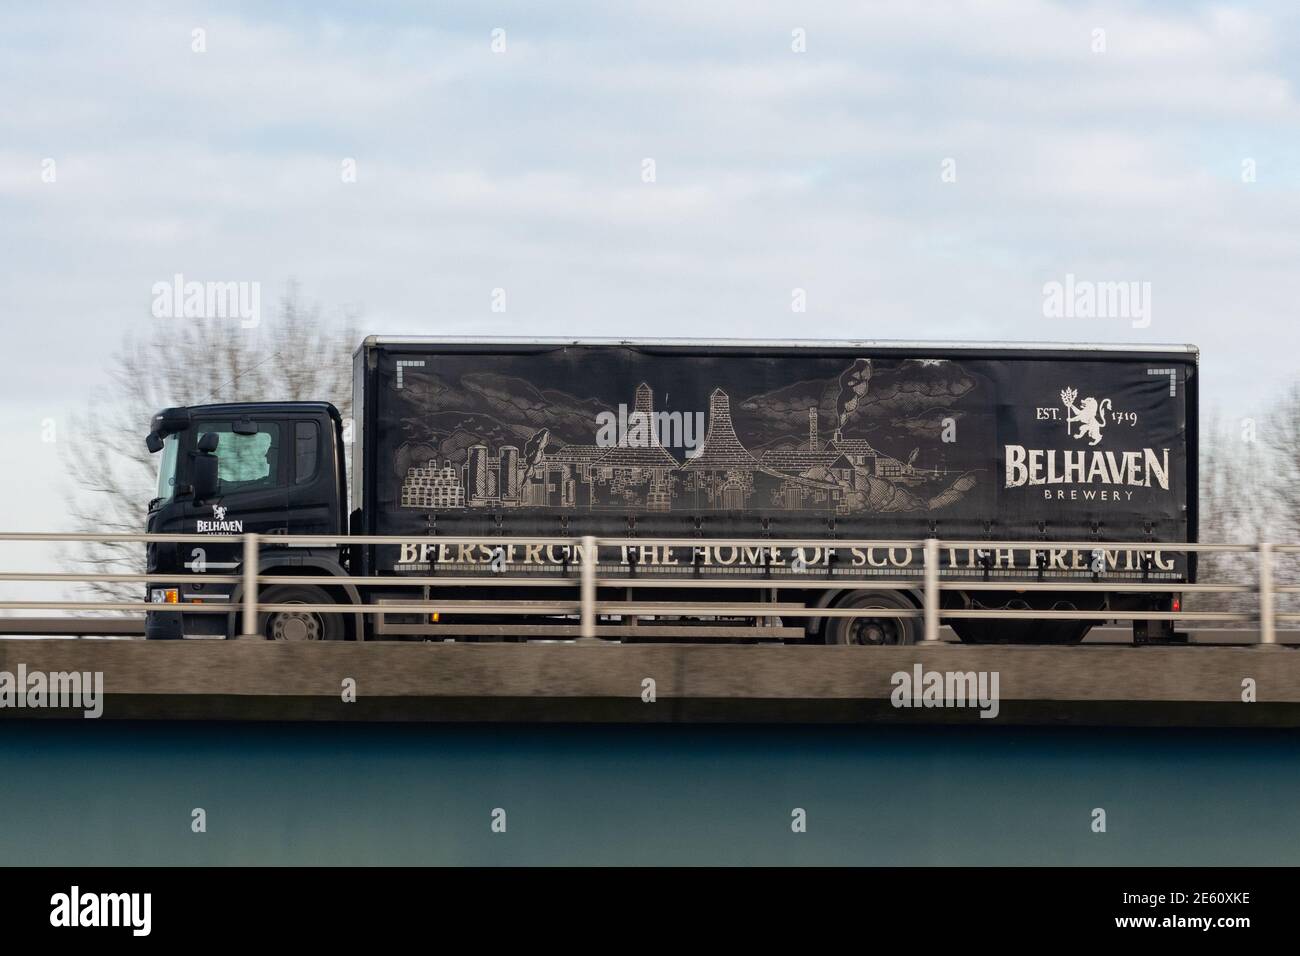 Camion de livraison de la brasserie Belhaven - Écosse, Royaume-Uni Banque D'Images